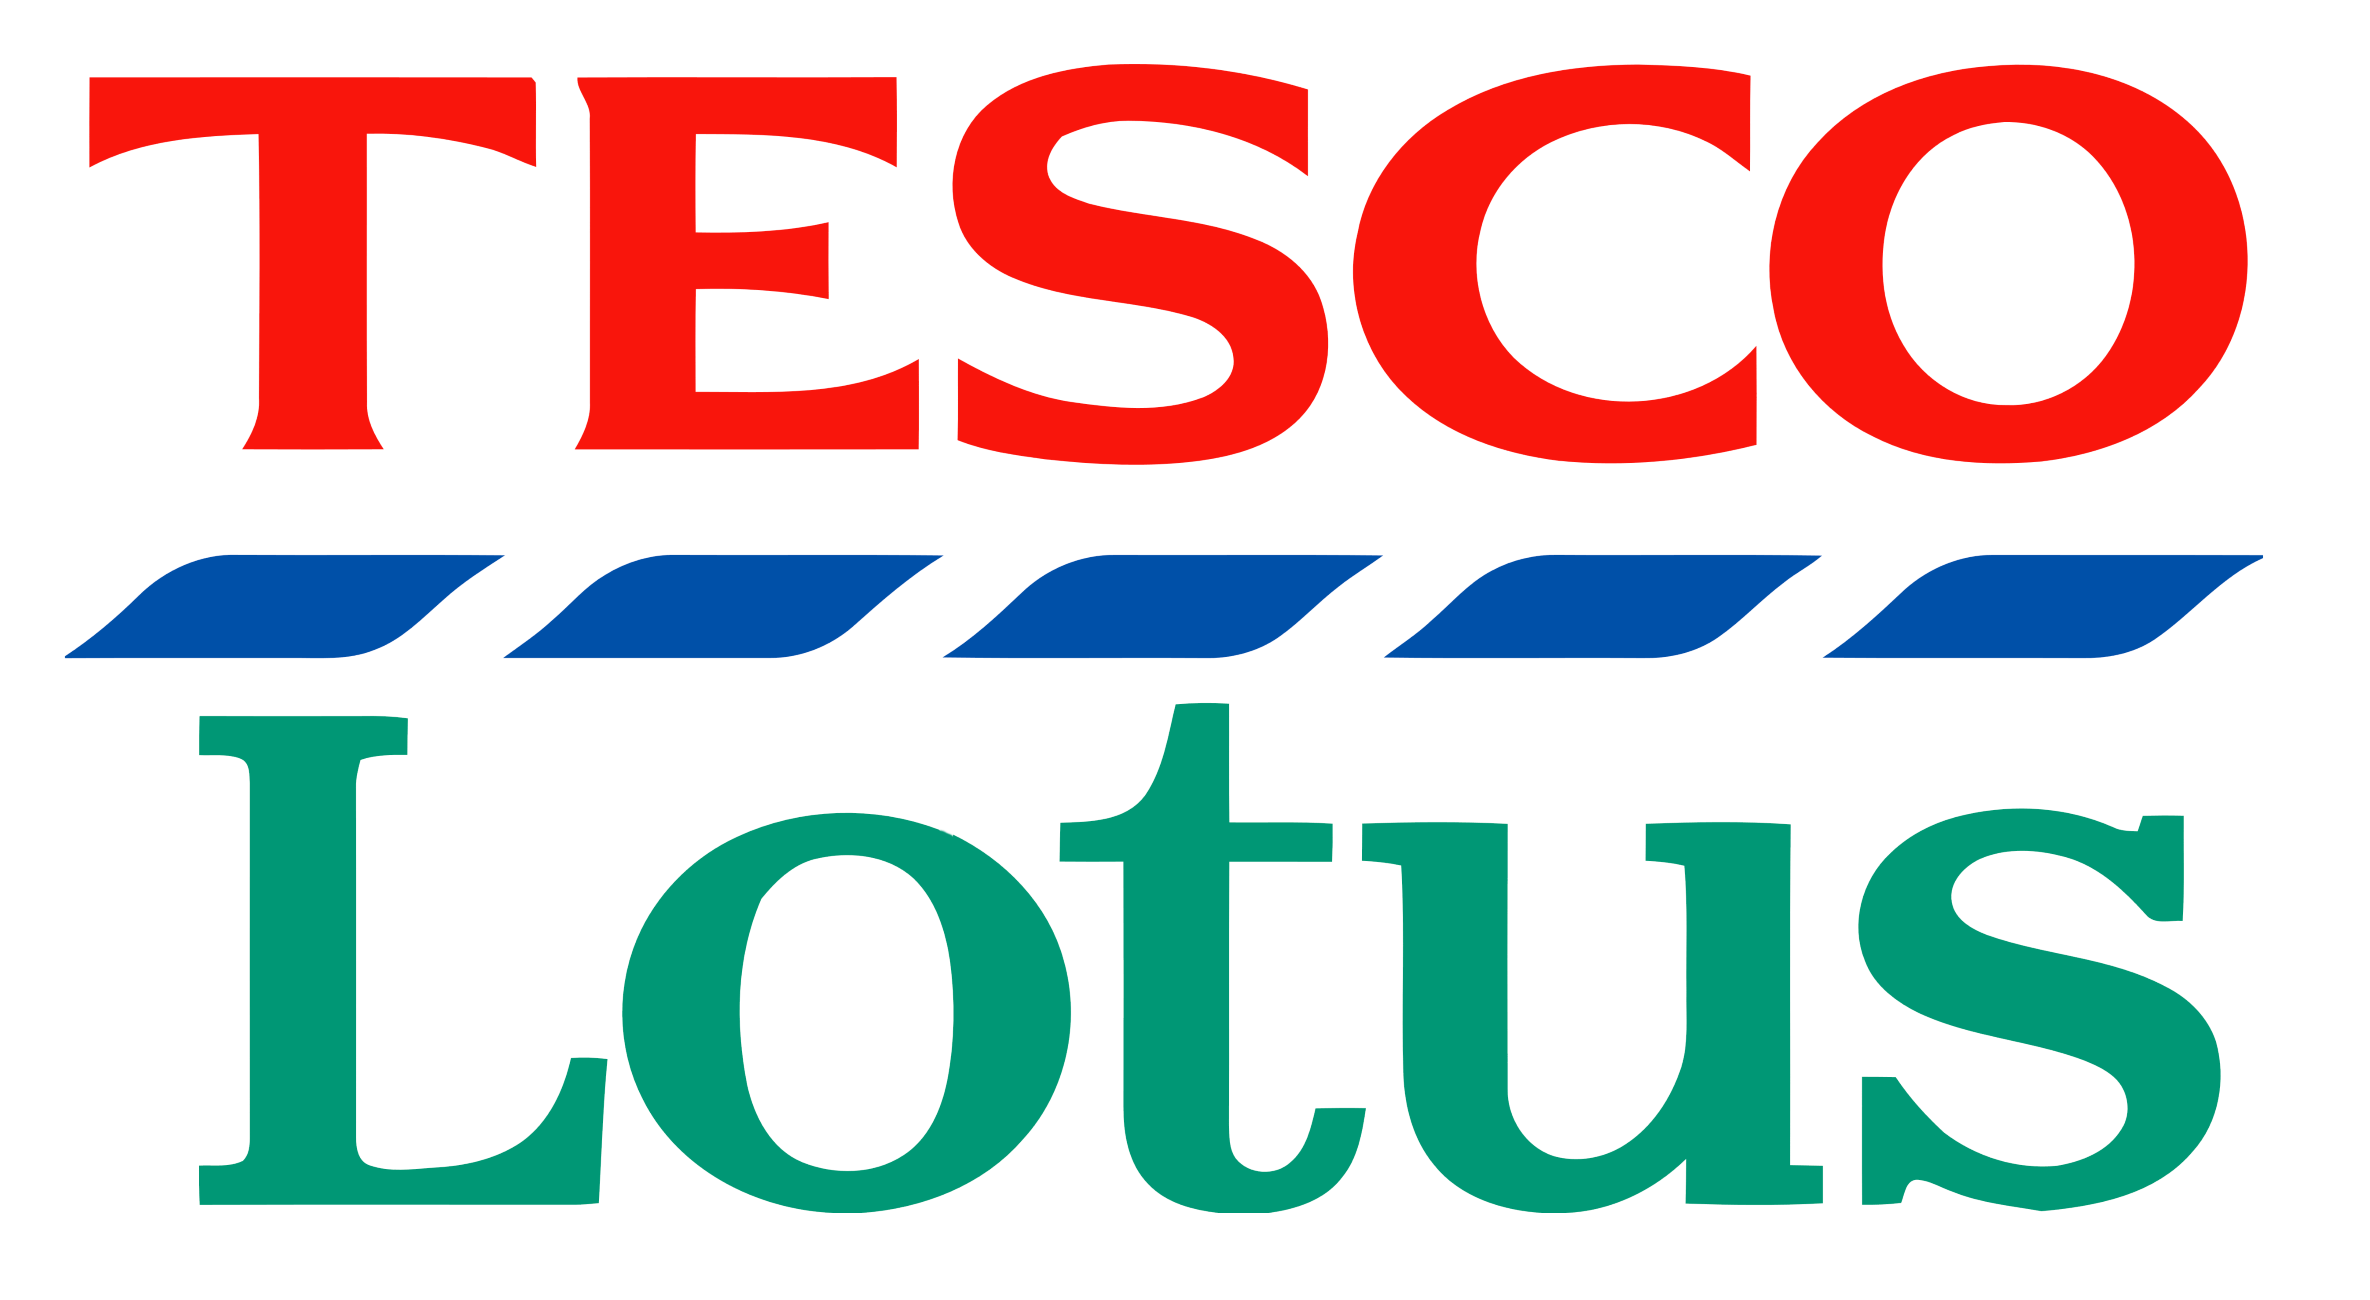 Tesco Lotus logo, logotype